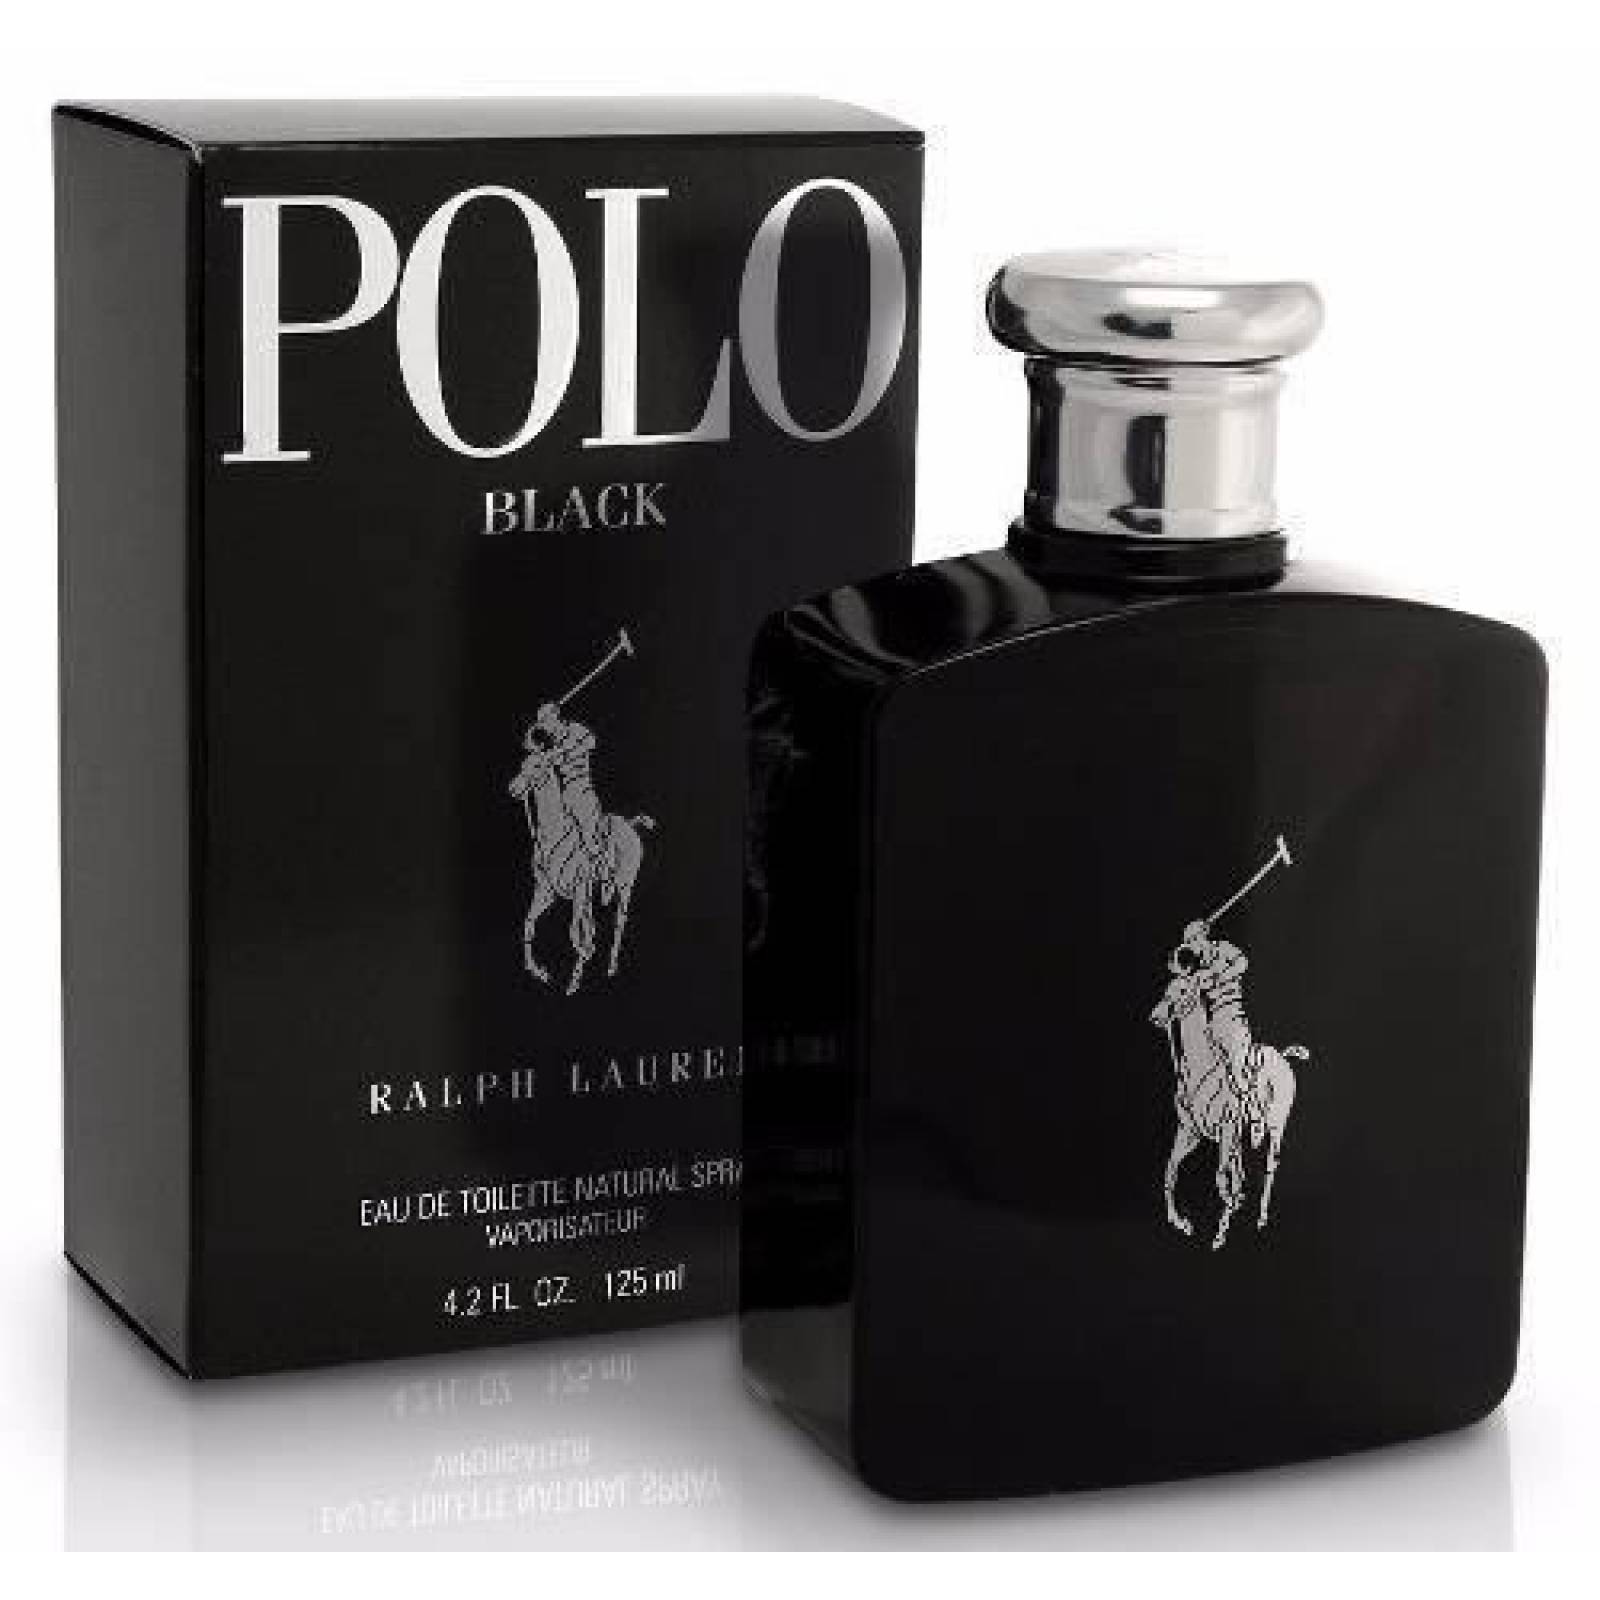 Polo Black Caballero 125 Ml Ralph Lauren Spray - Original